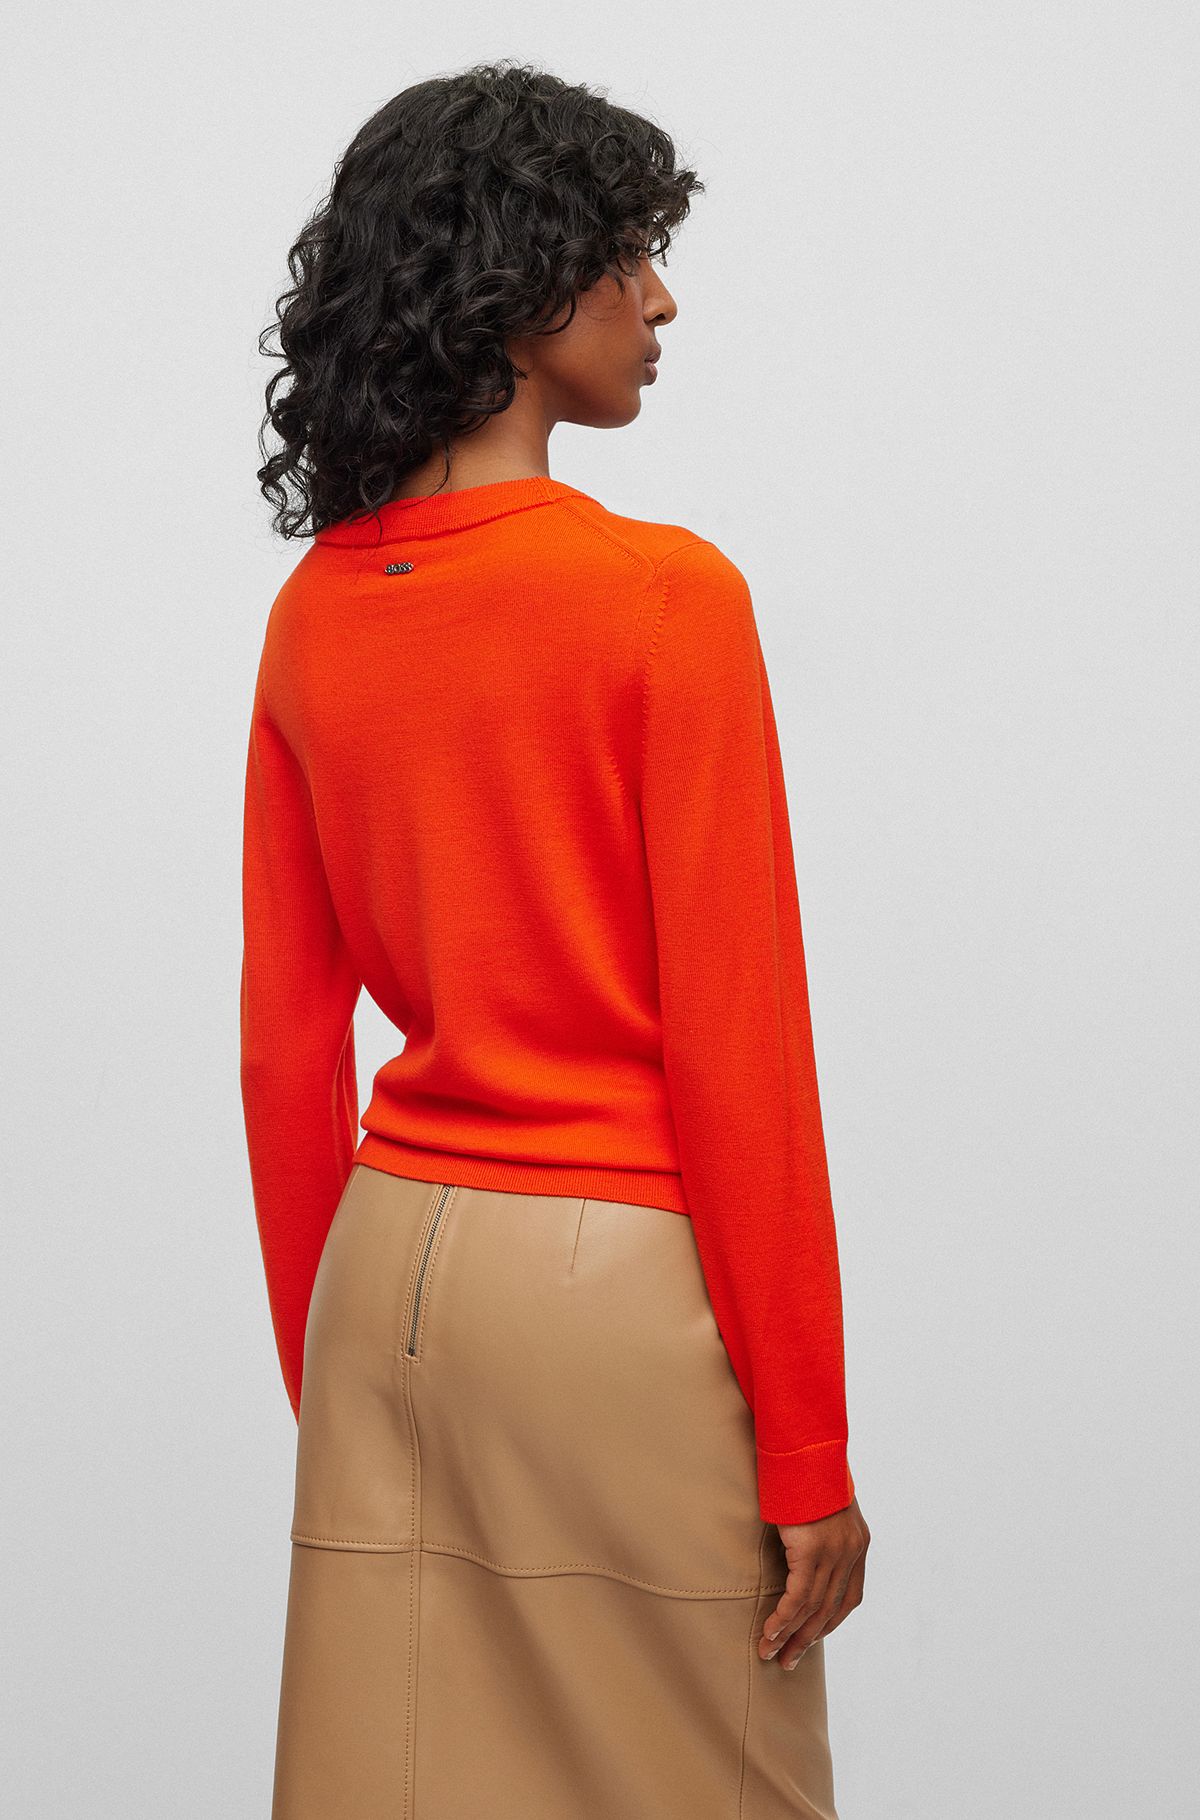 for Orange Sweaters by Cardigans HUGO BOSS & Women